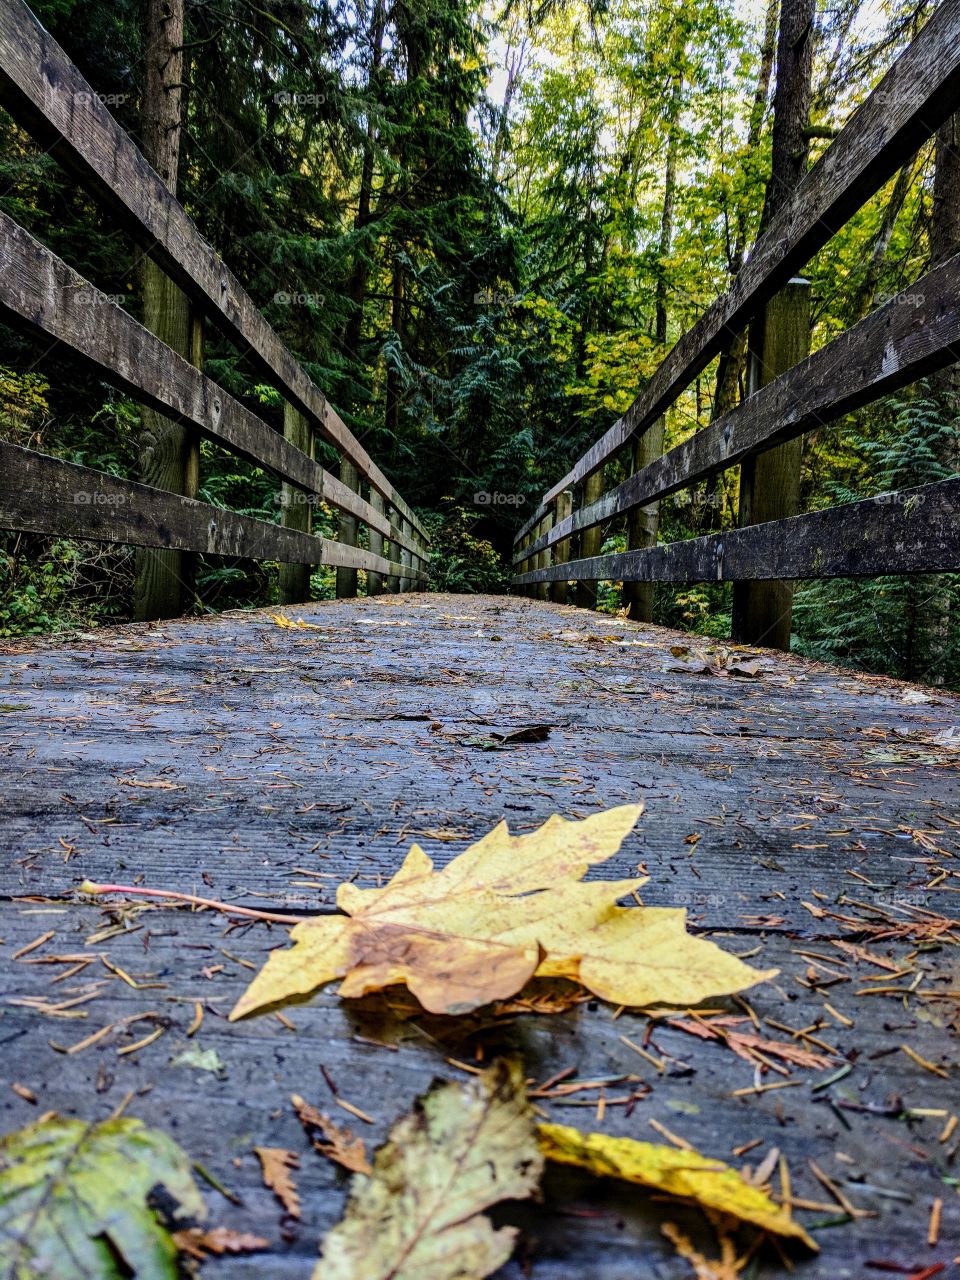 leaf on a bridge